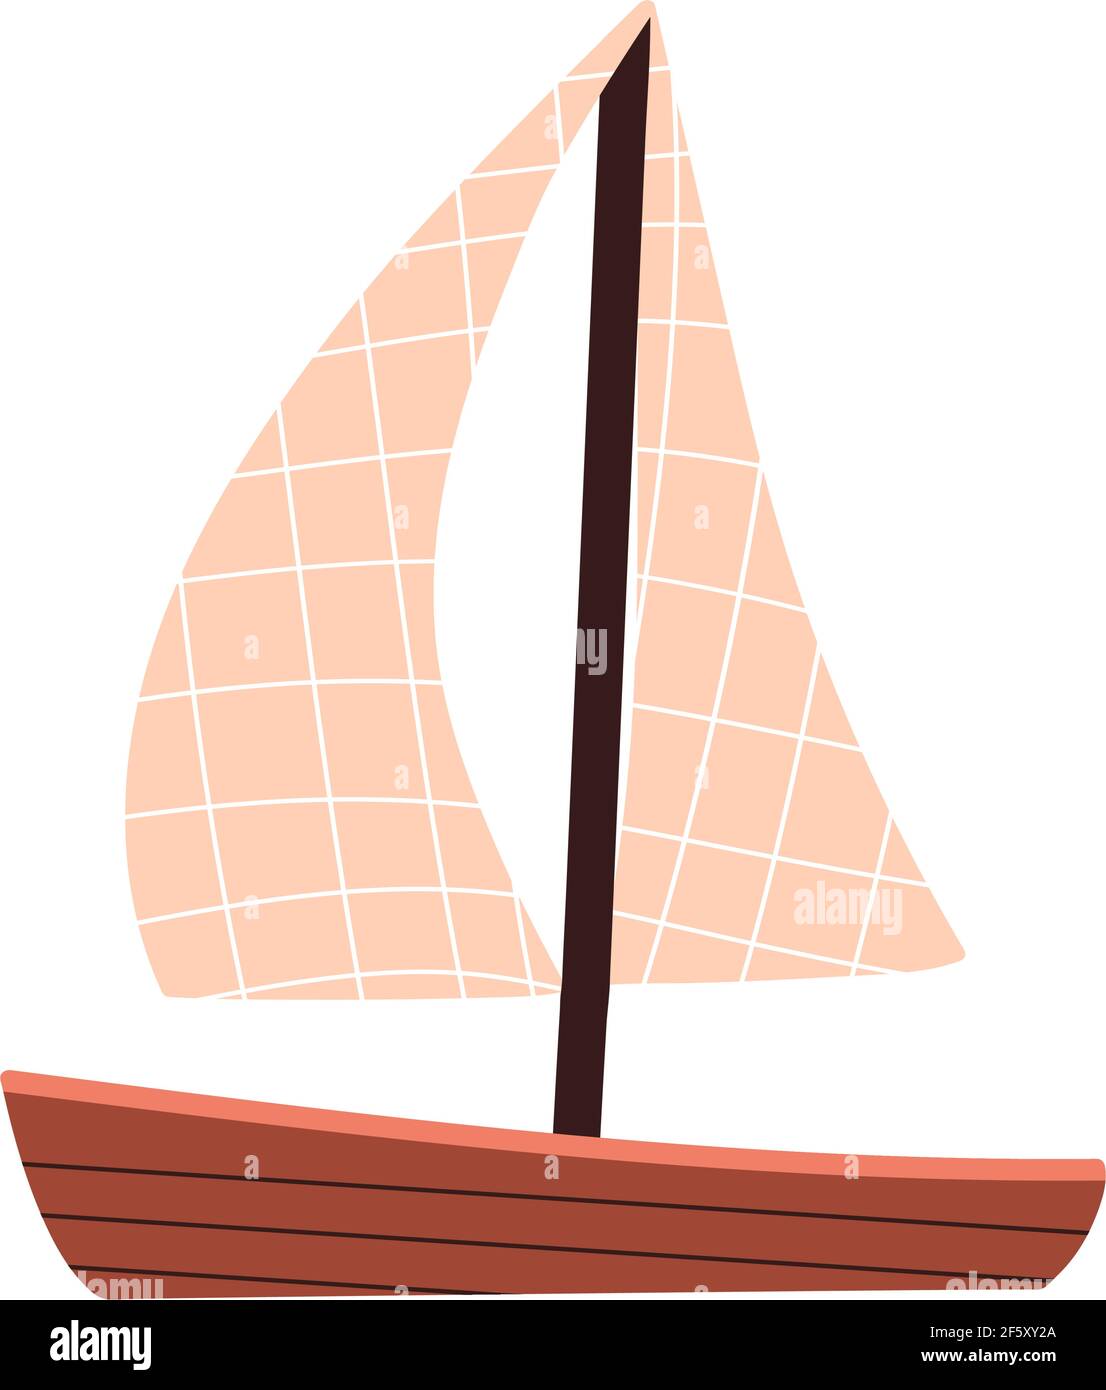 Bateau en bois avec voiles. Petit bateau jouet. Transport maritime. Illustration du brut vectoriel de style plat. Illustration de Vecteur